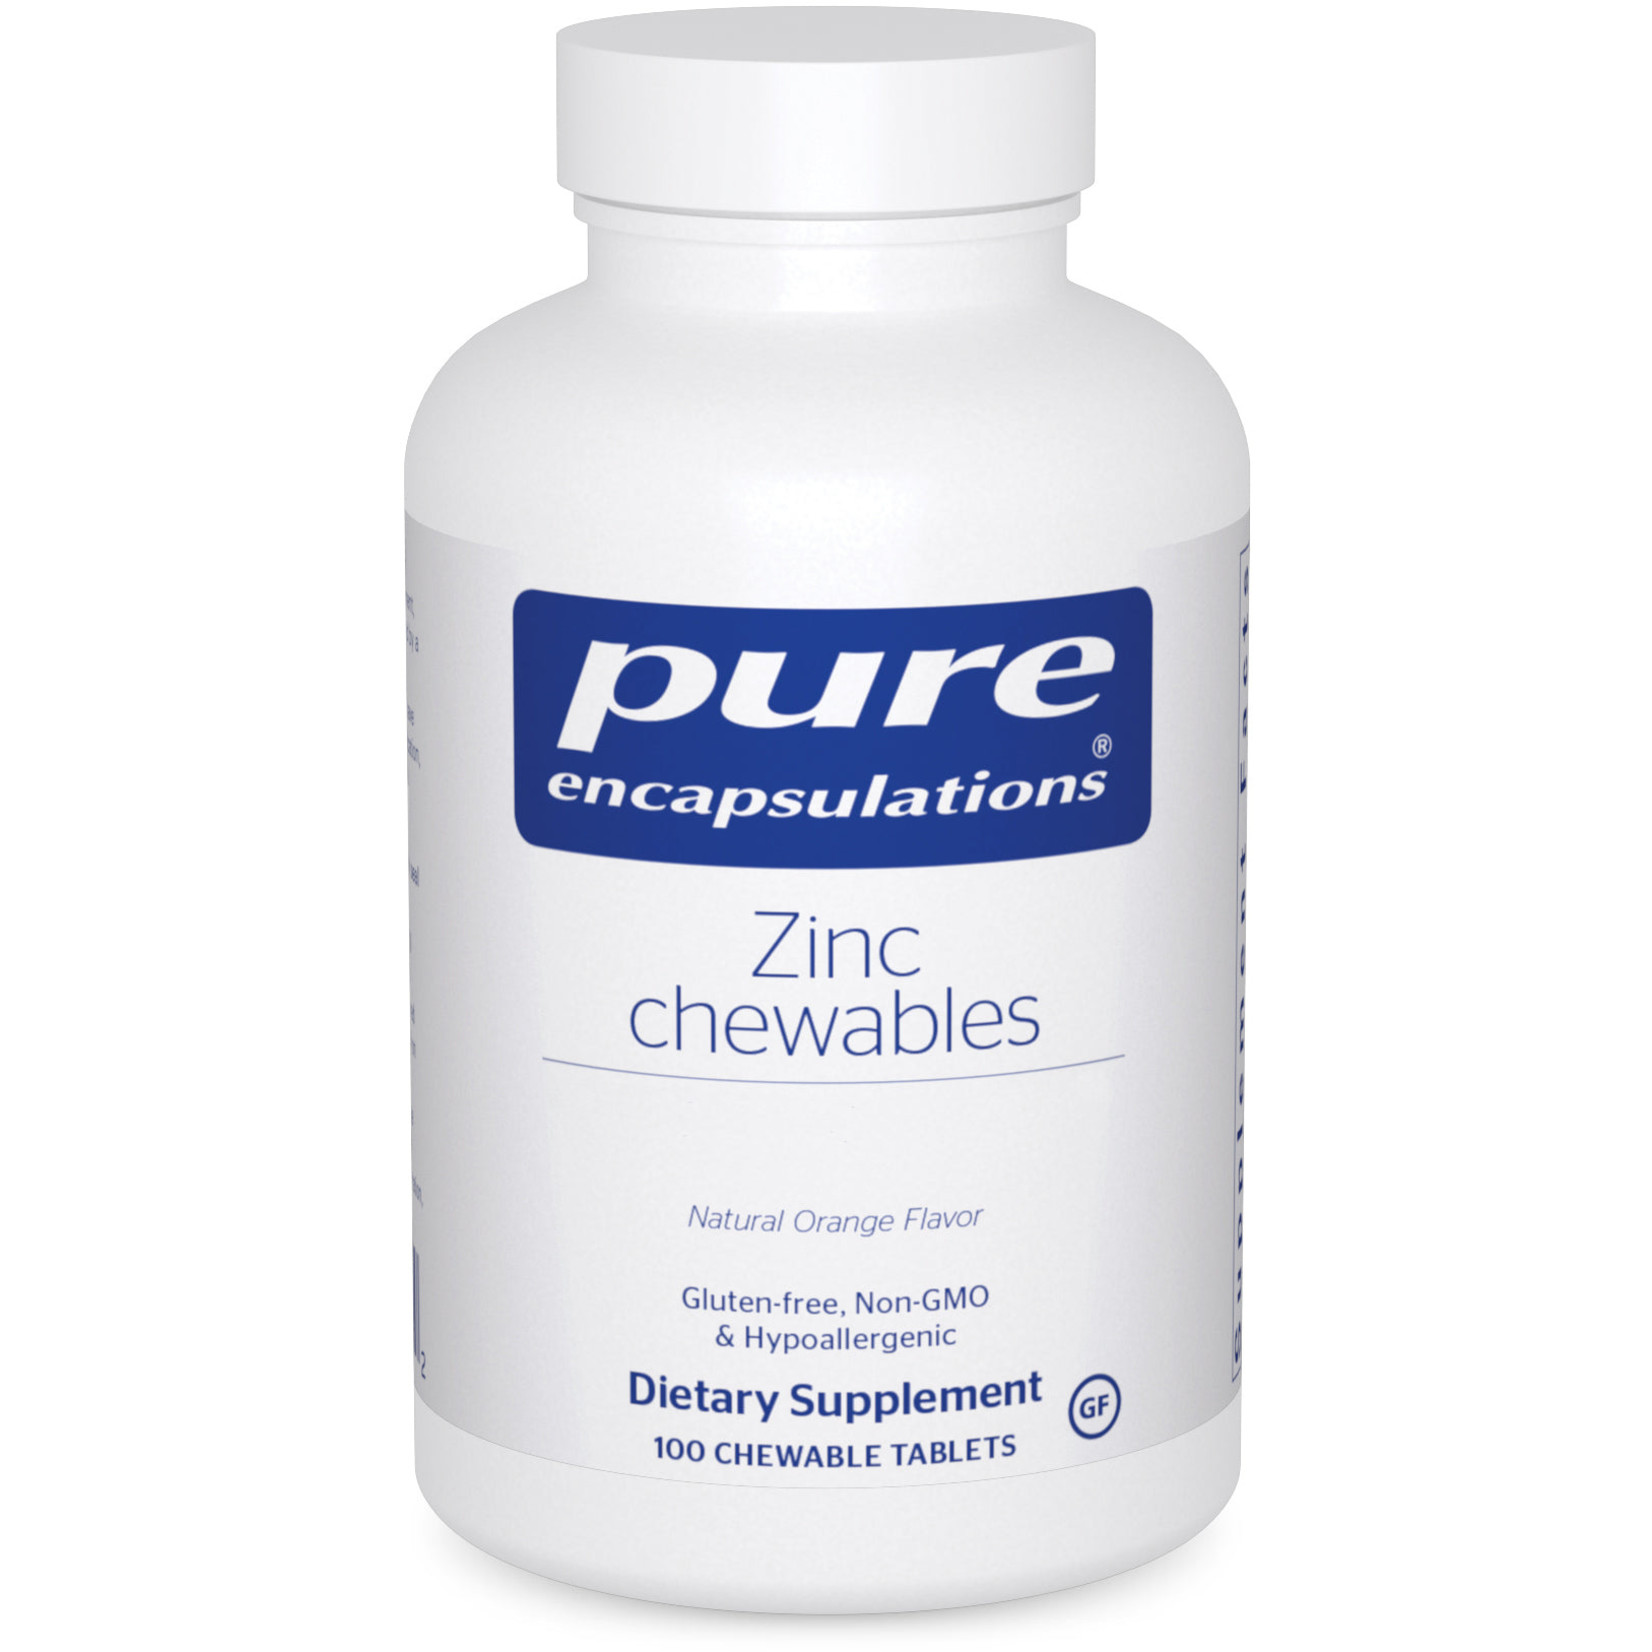 Pure Encapsulations Pure Encapsulations - Zinc Chewables - 100 Tablets